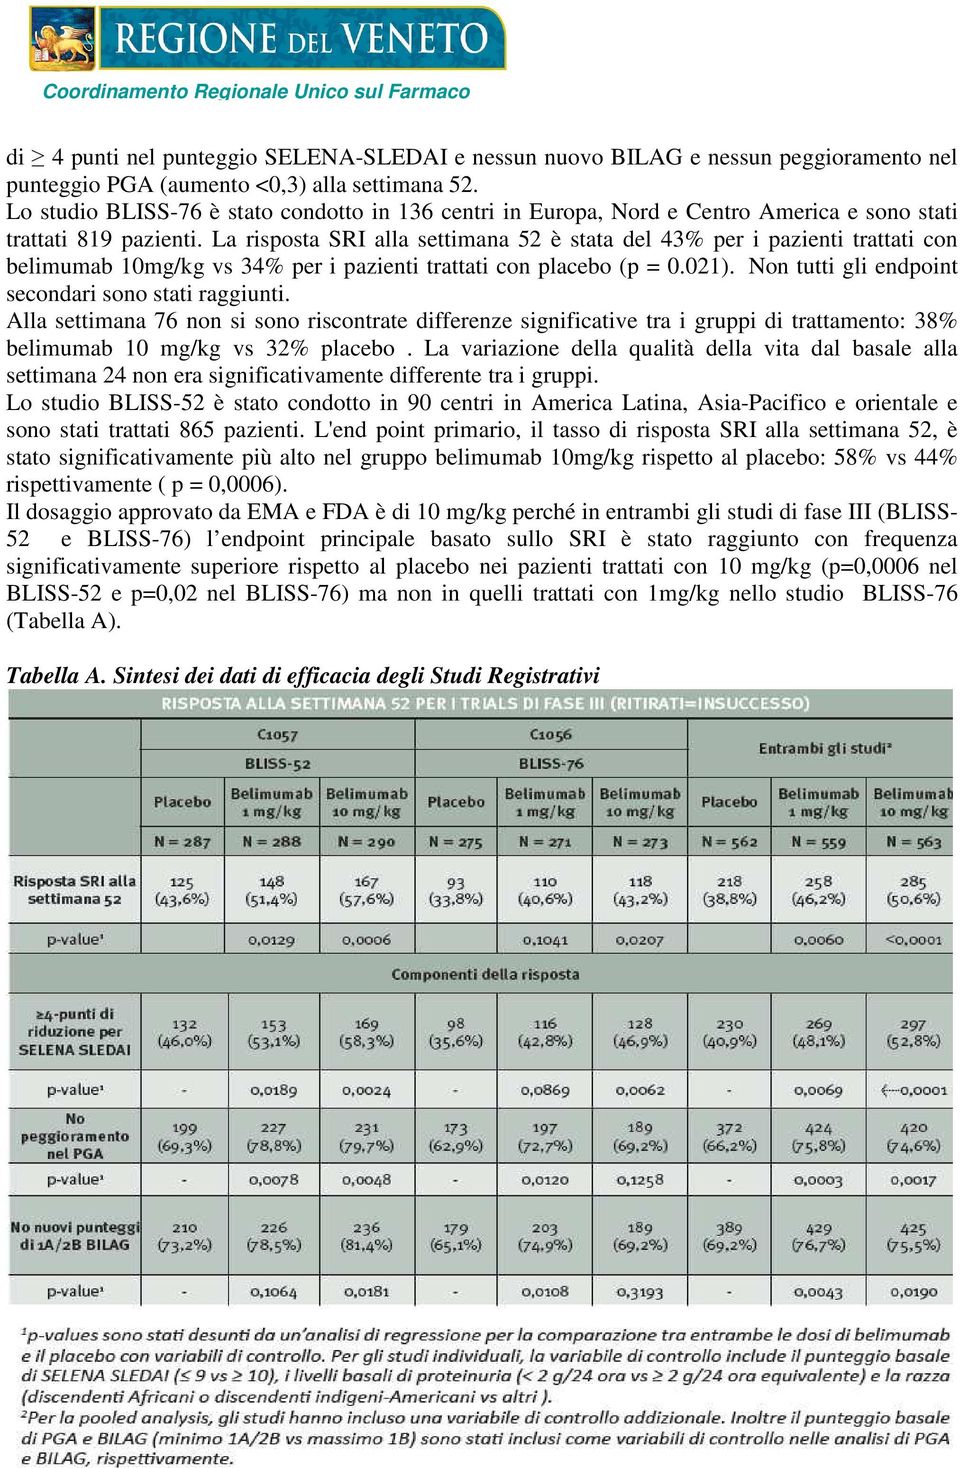 La risposta SRI alla settimana 52 è stata del 43% per i pazienti trattati con belimumab 10mg/kg vs 34% per i pazienti trattati con placebo (p = 0.021).